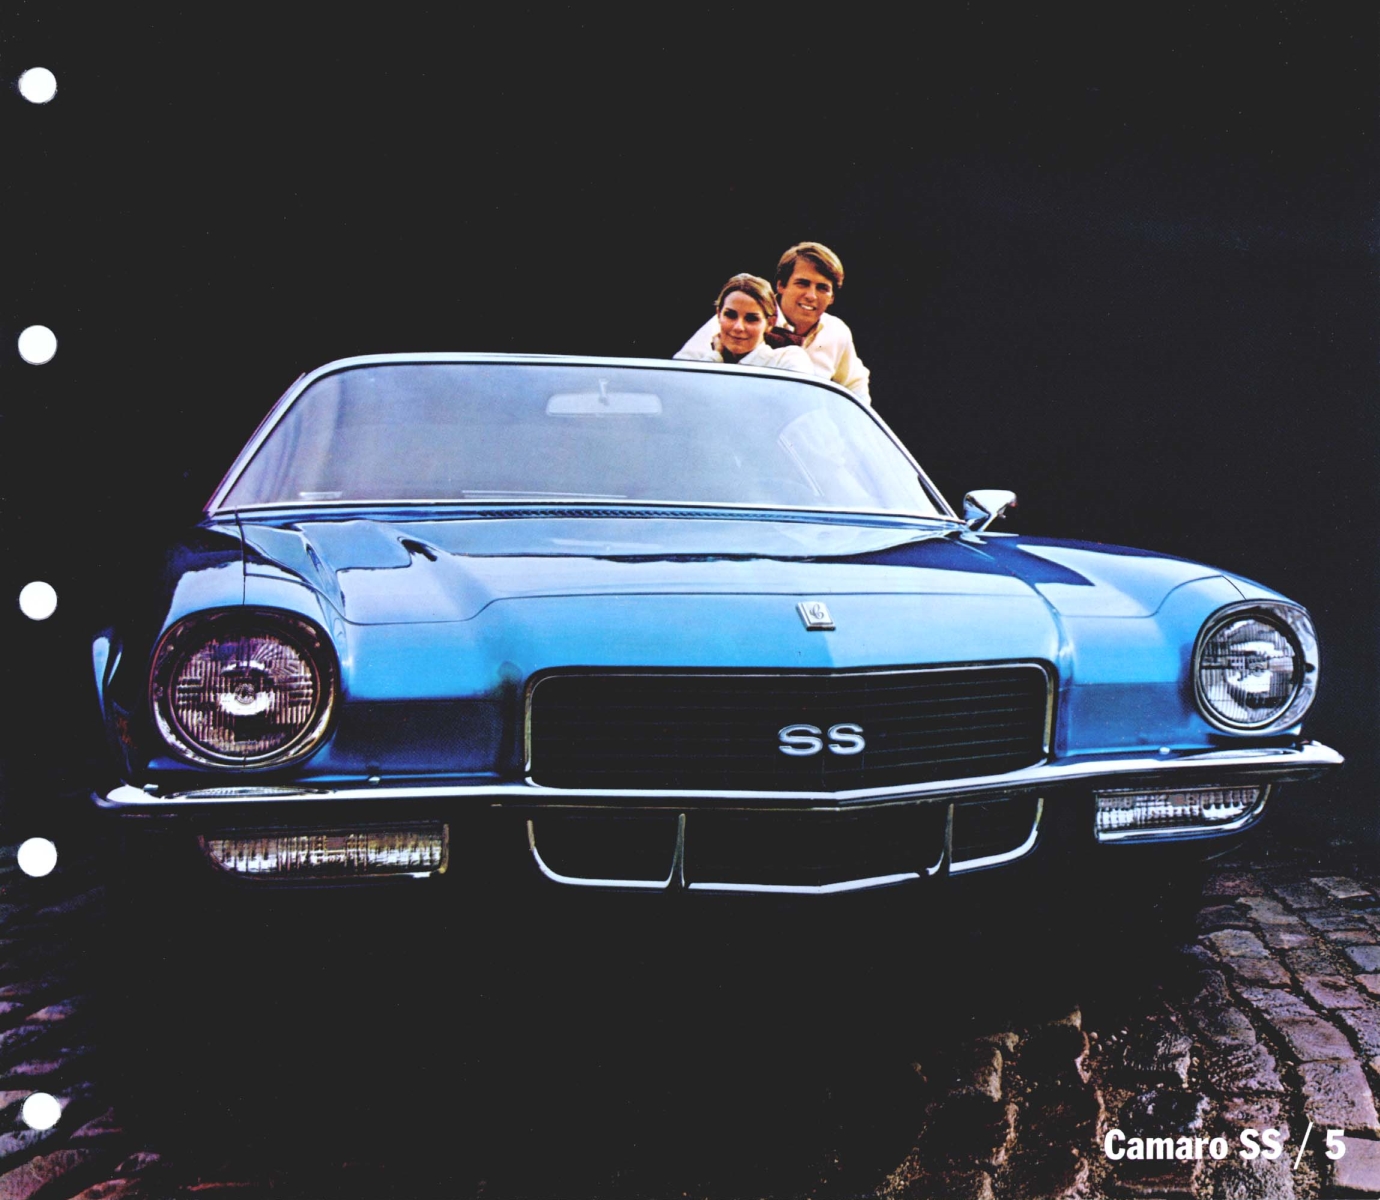 1970_Chevrolet_Dealer_Album-05-05